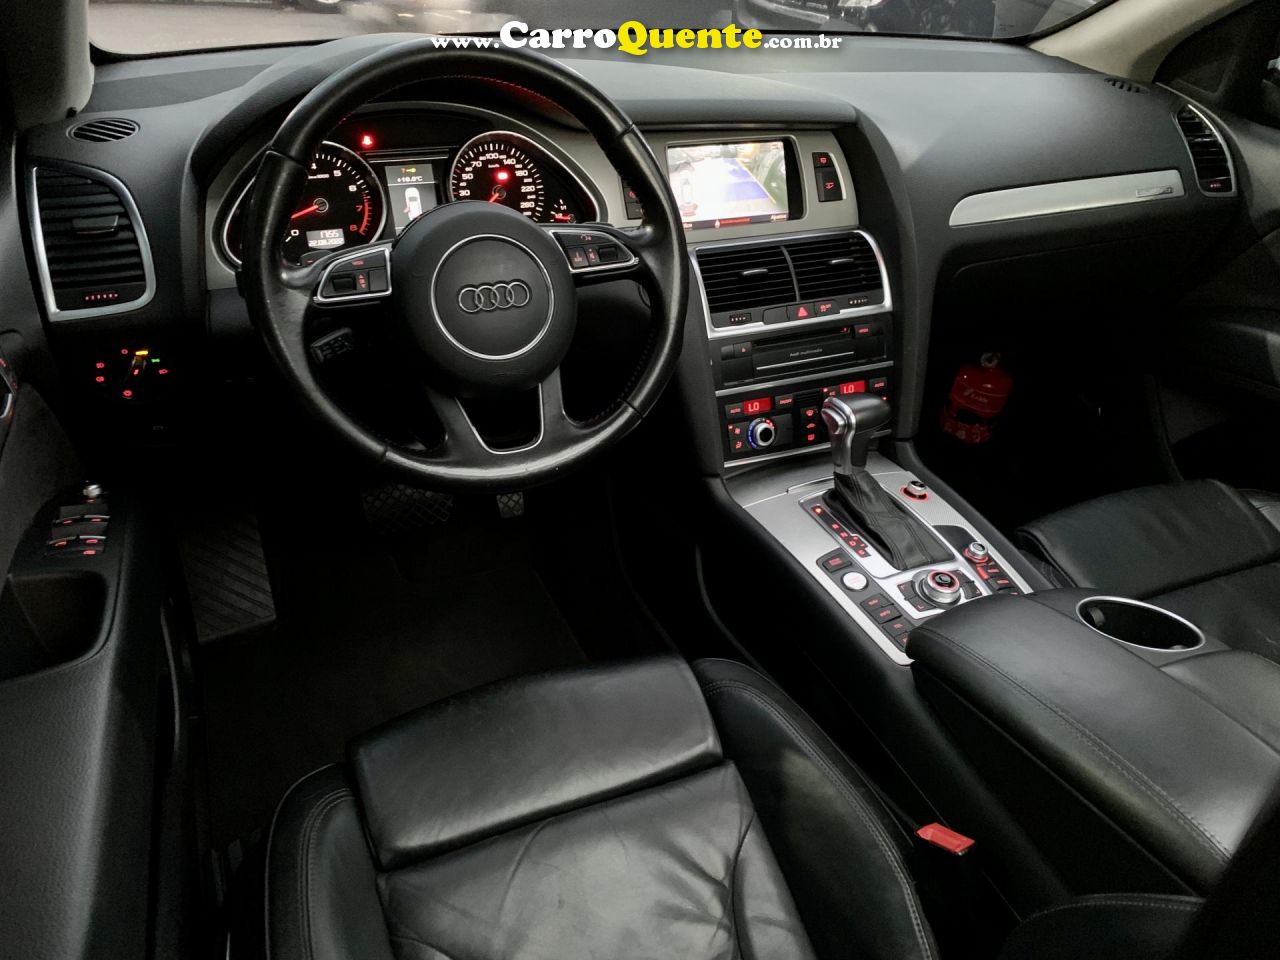 AUDI   Q7 3.0 V6 TFSI  QUAT.TIP.5P PERFORMANCE   PRATA 2015 3.0 V6 T GASOLINA - Loja